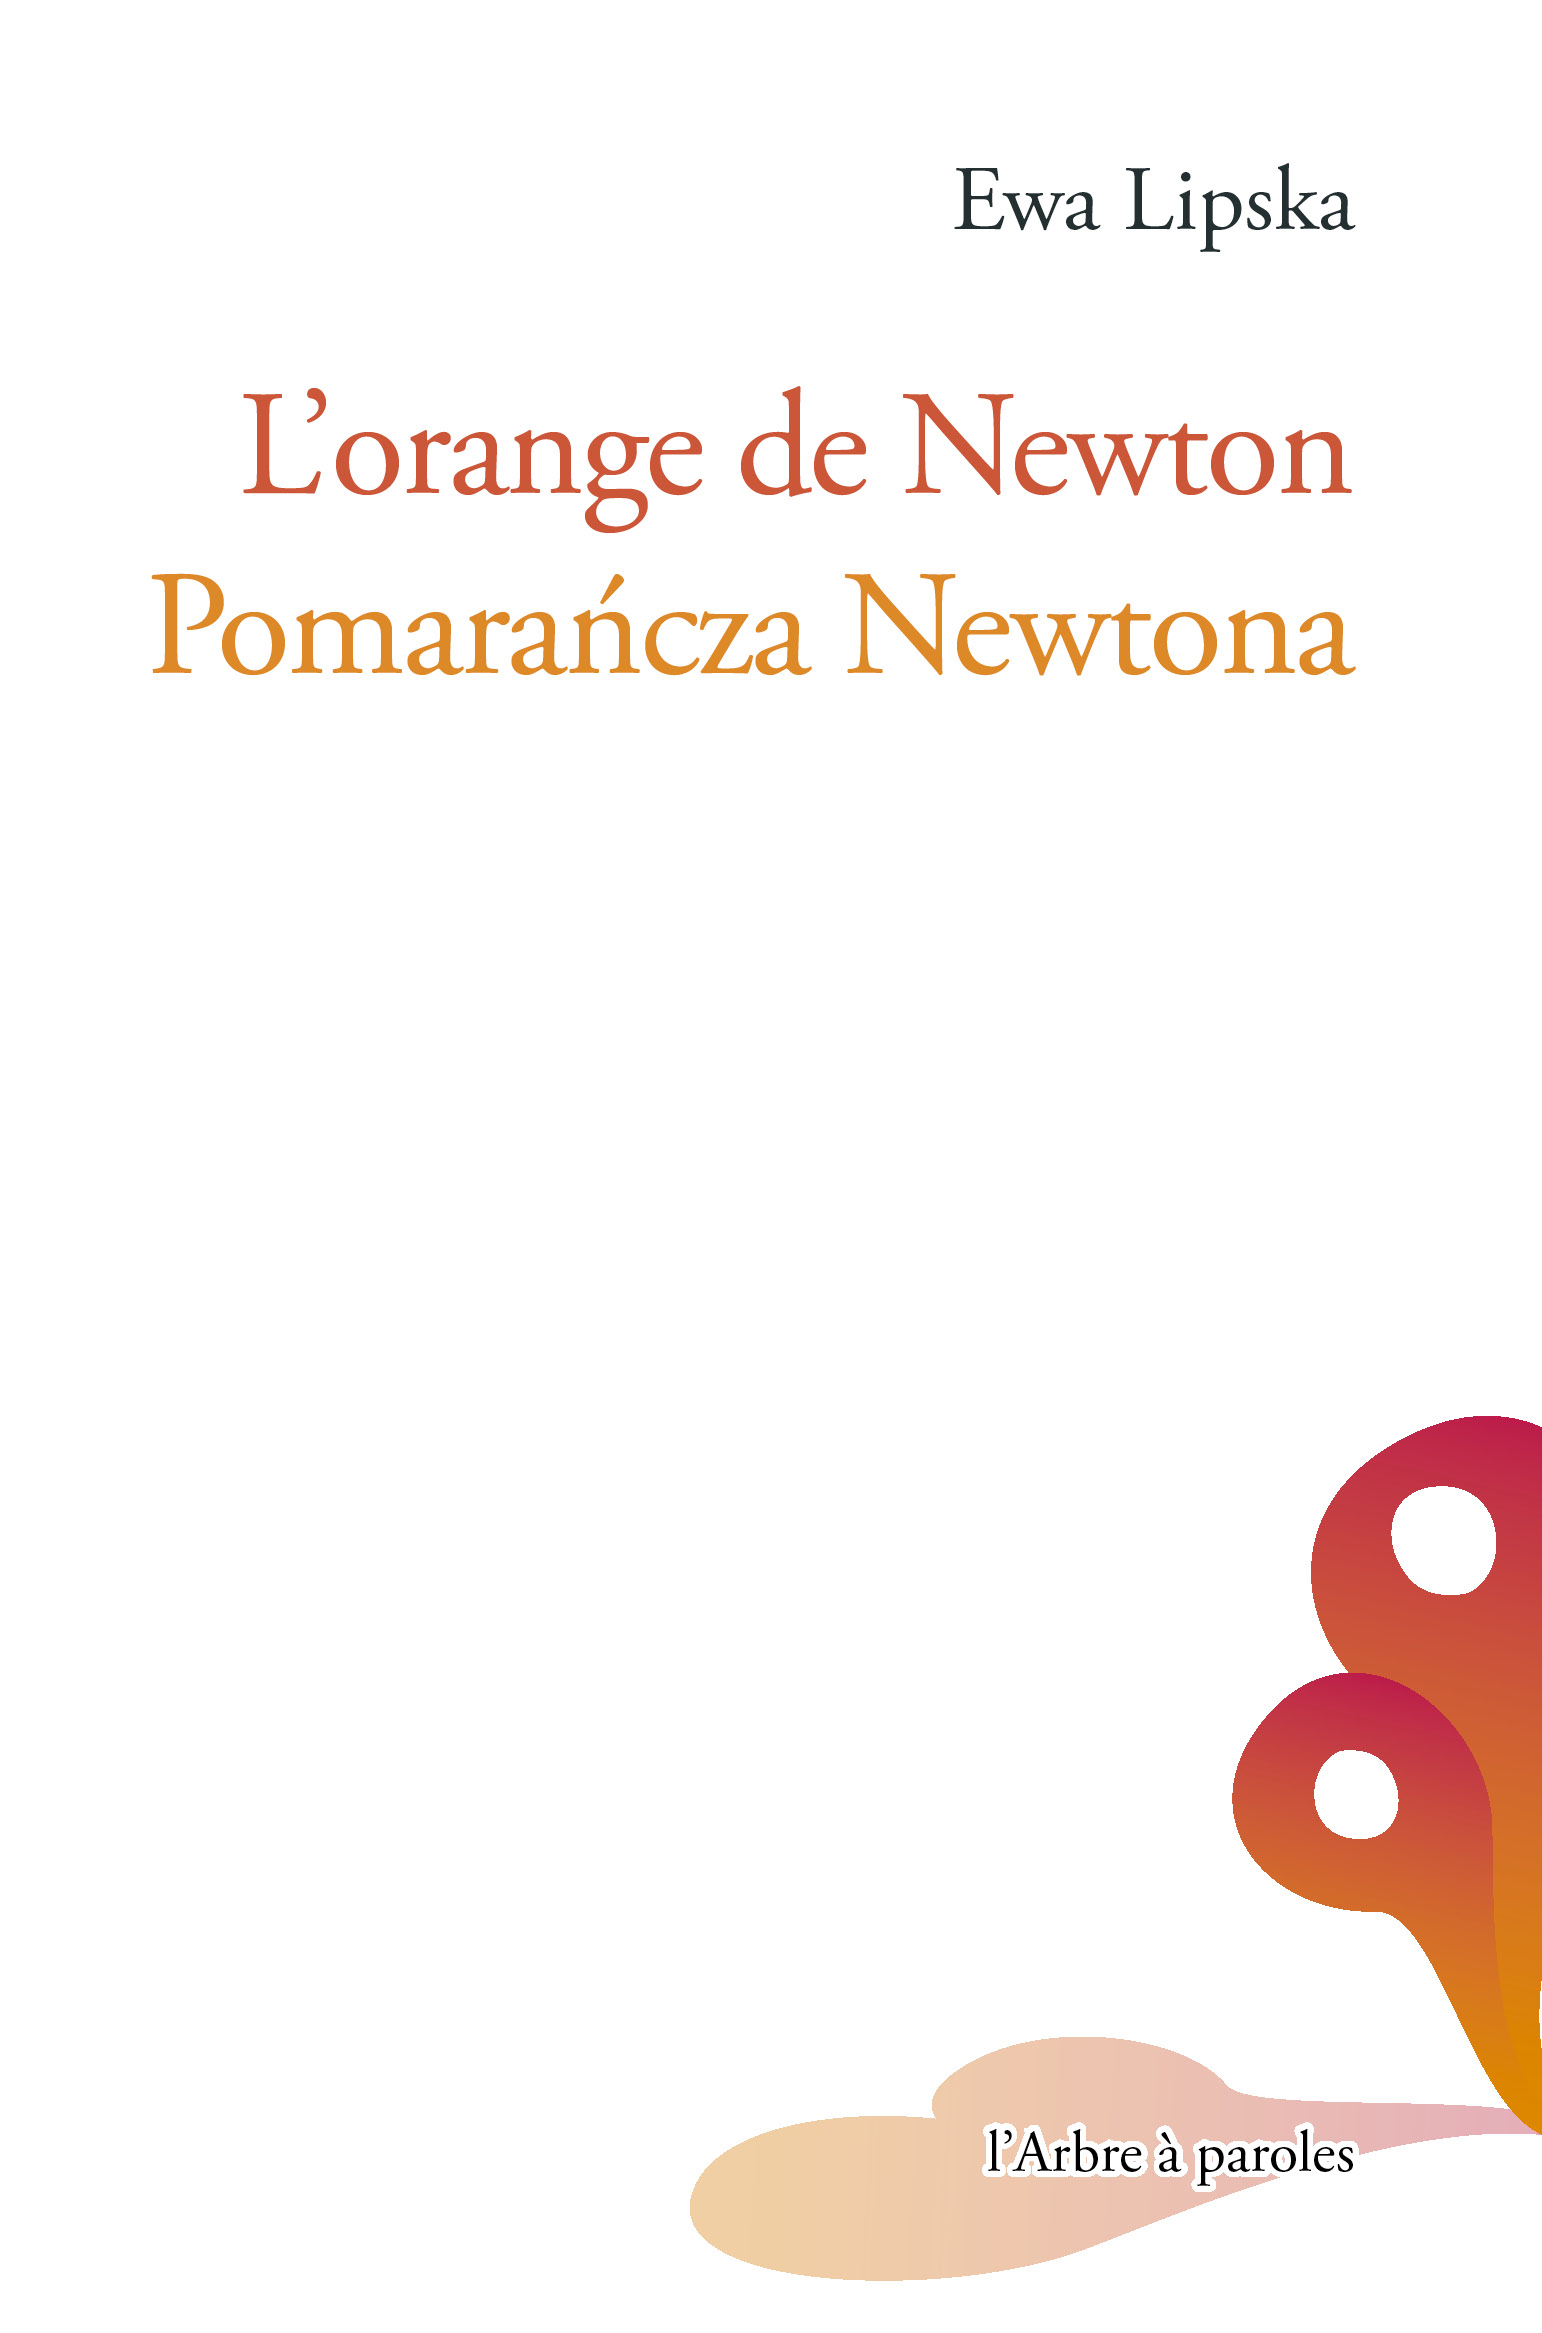 L'orange de Newton Ewa Lipska